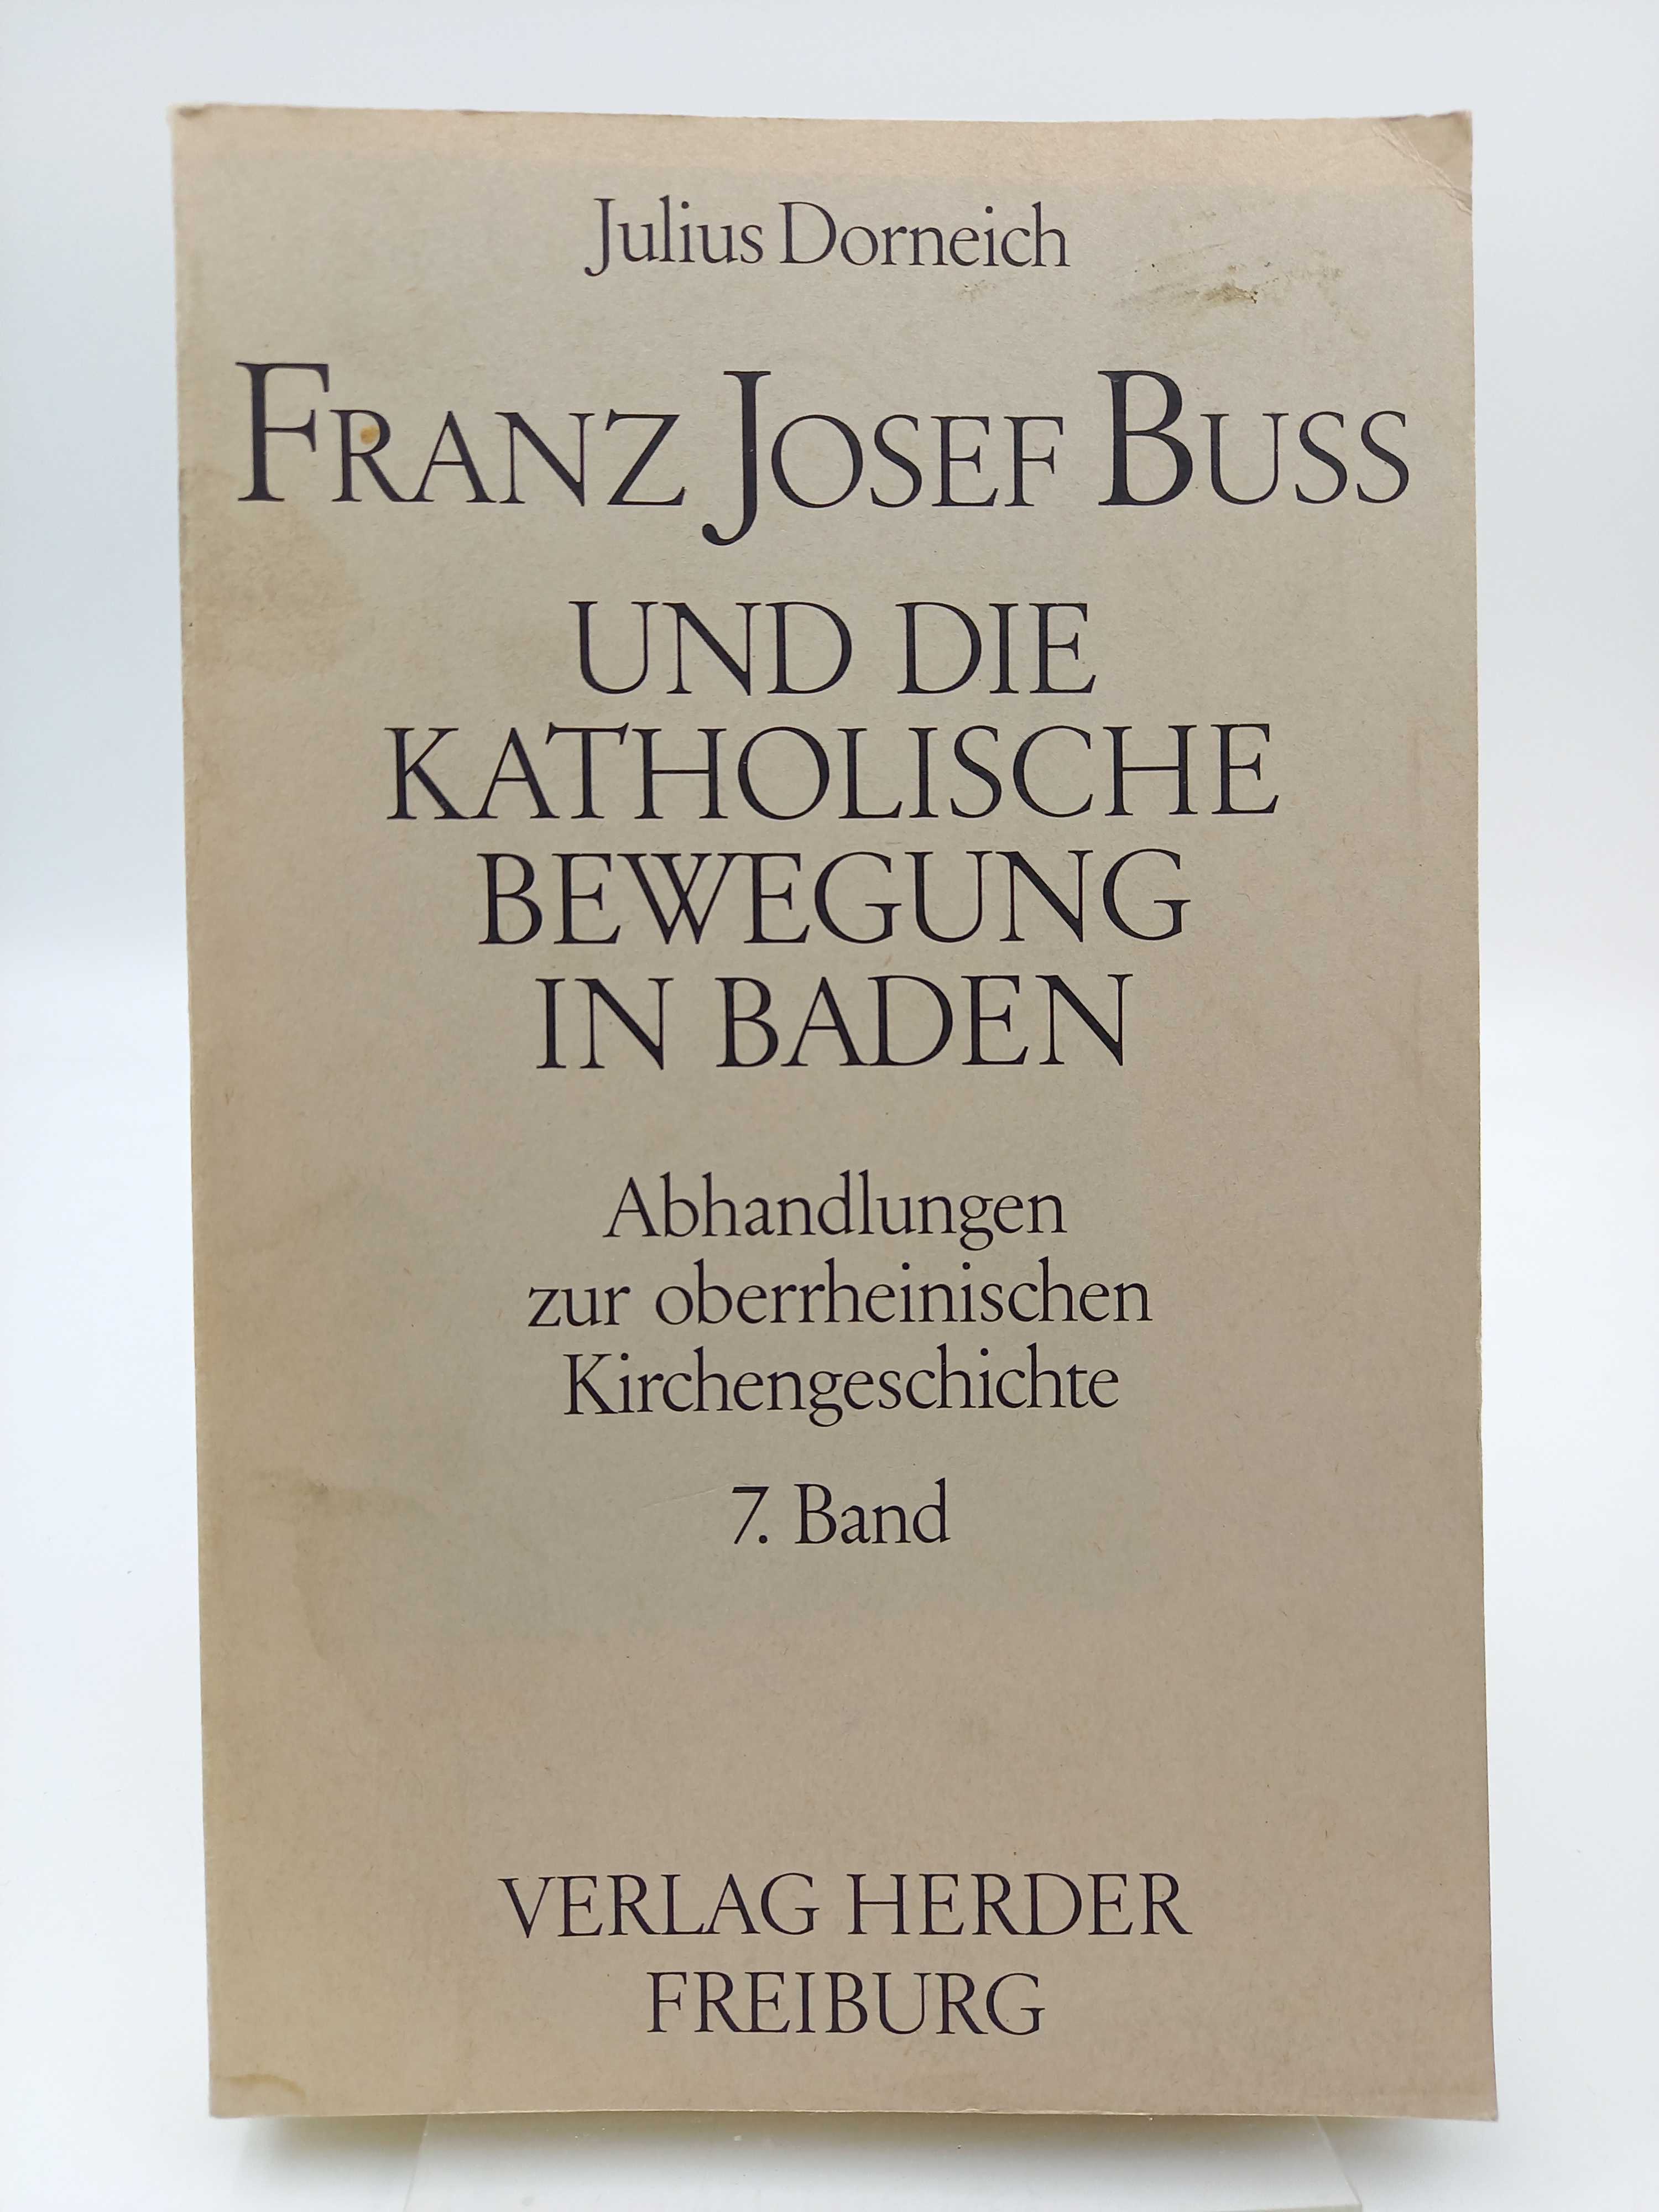 Franz Josef Buß und die katholische Bewegung in Baden. (Abhandlungen zur oberrheinischen Kirchengeschichte, 7. Band) - Dorneich, Julius